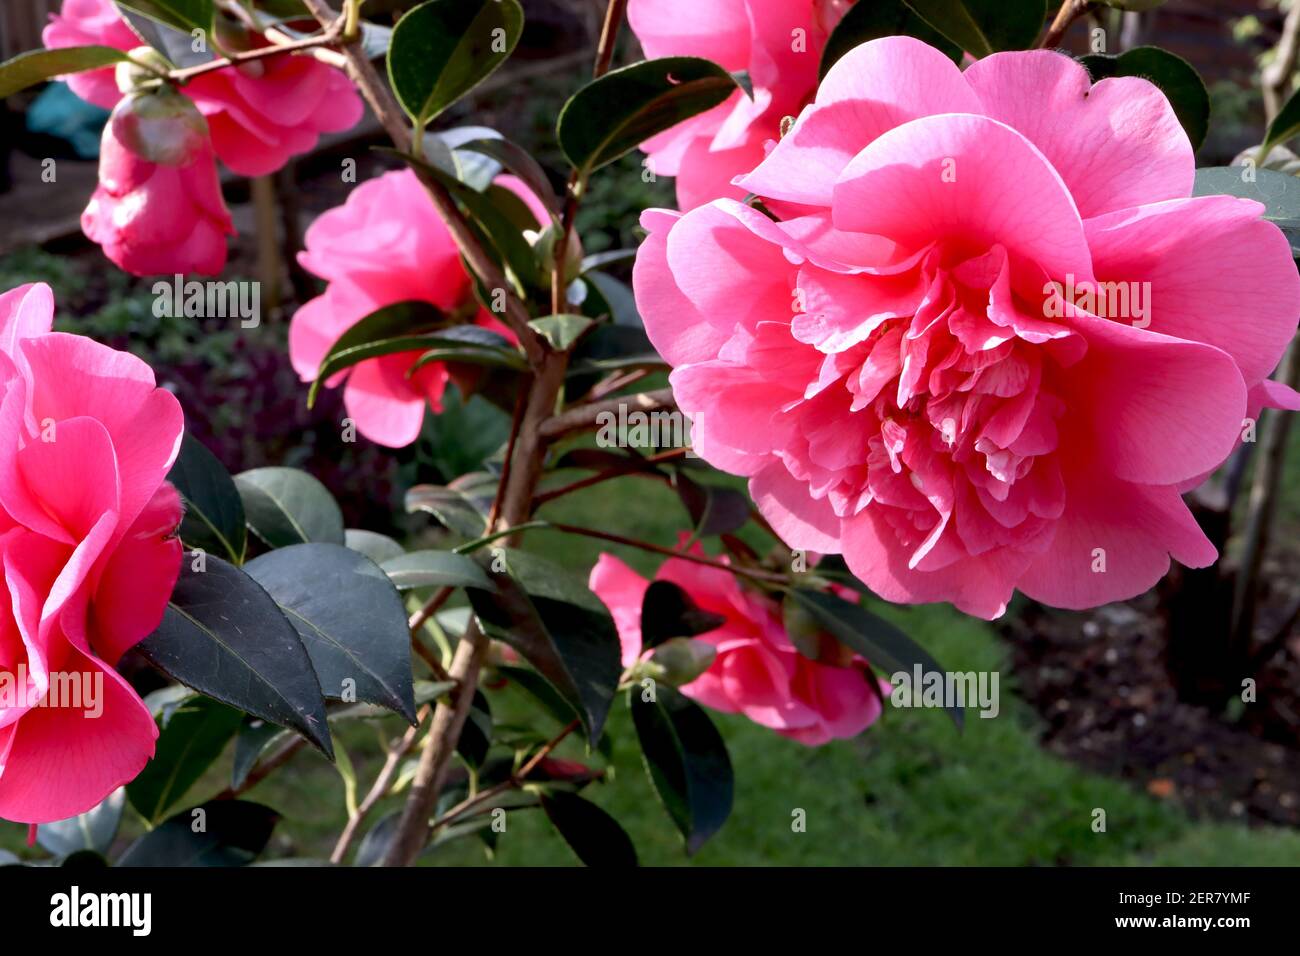 Camellia x williamsii ‘anticipazione’ anticipazione camellia – Grande peonia forma rosa profonda doppio fiore, febbraio, Inghilterra, Regno Unito Foto Stock